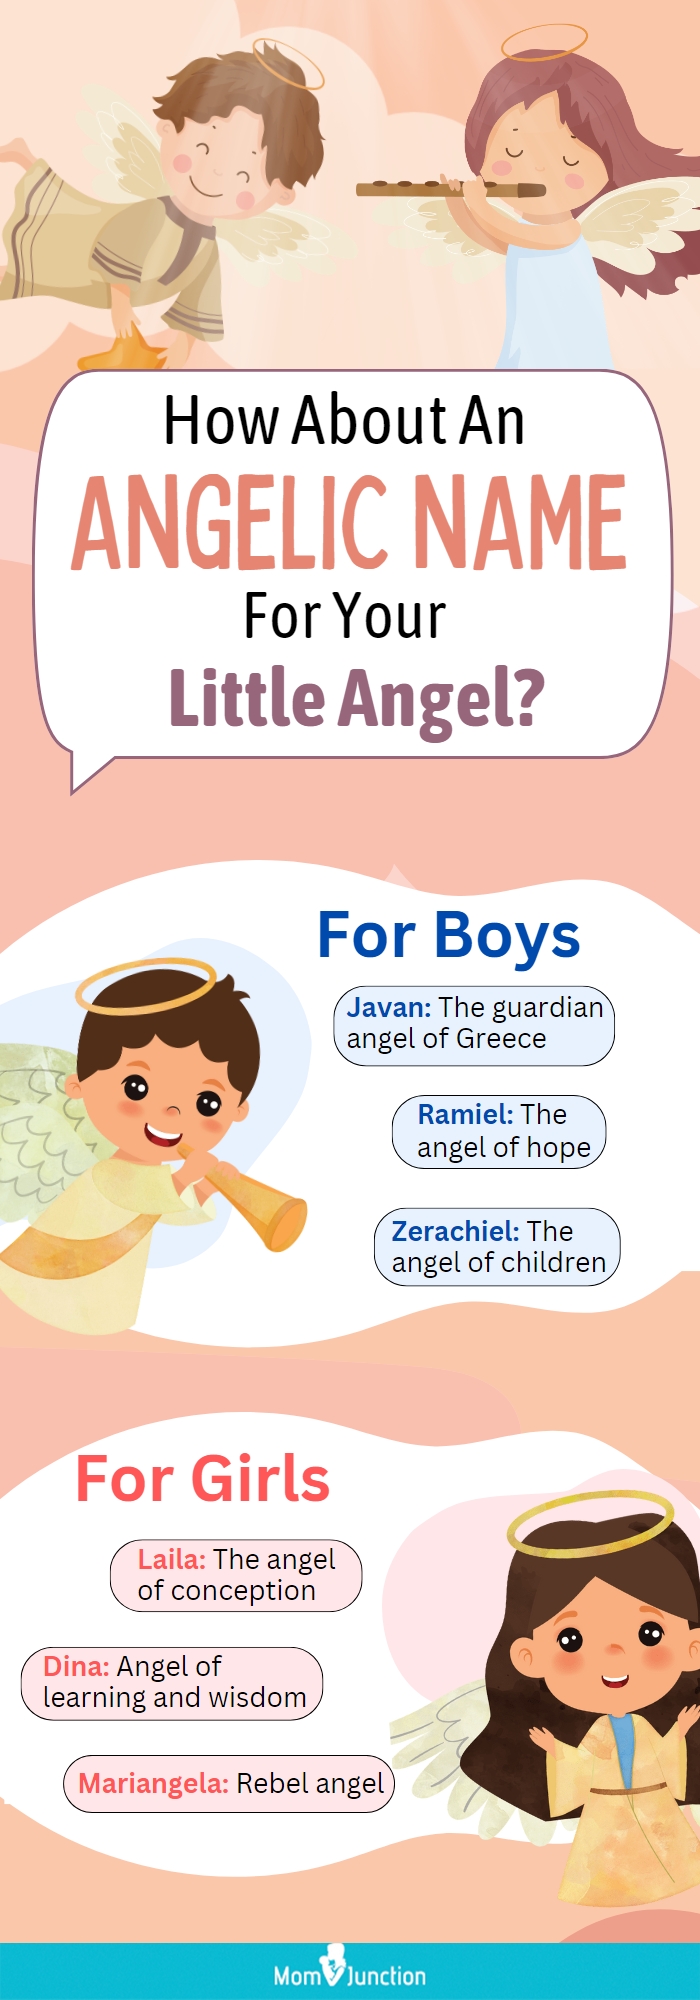 代表天使的婴儿名字(信息图表)